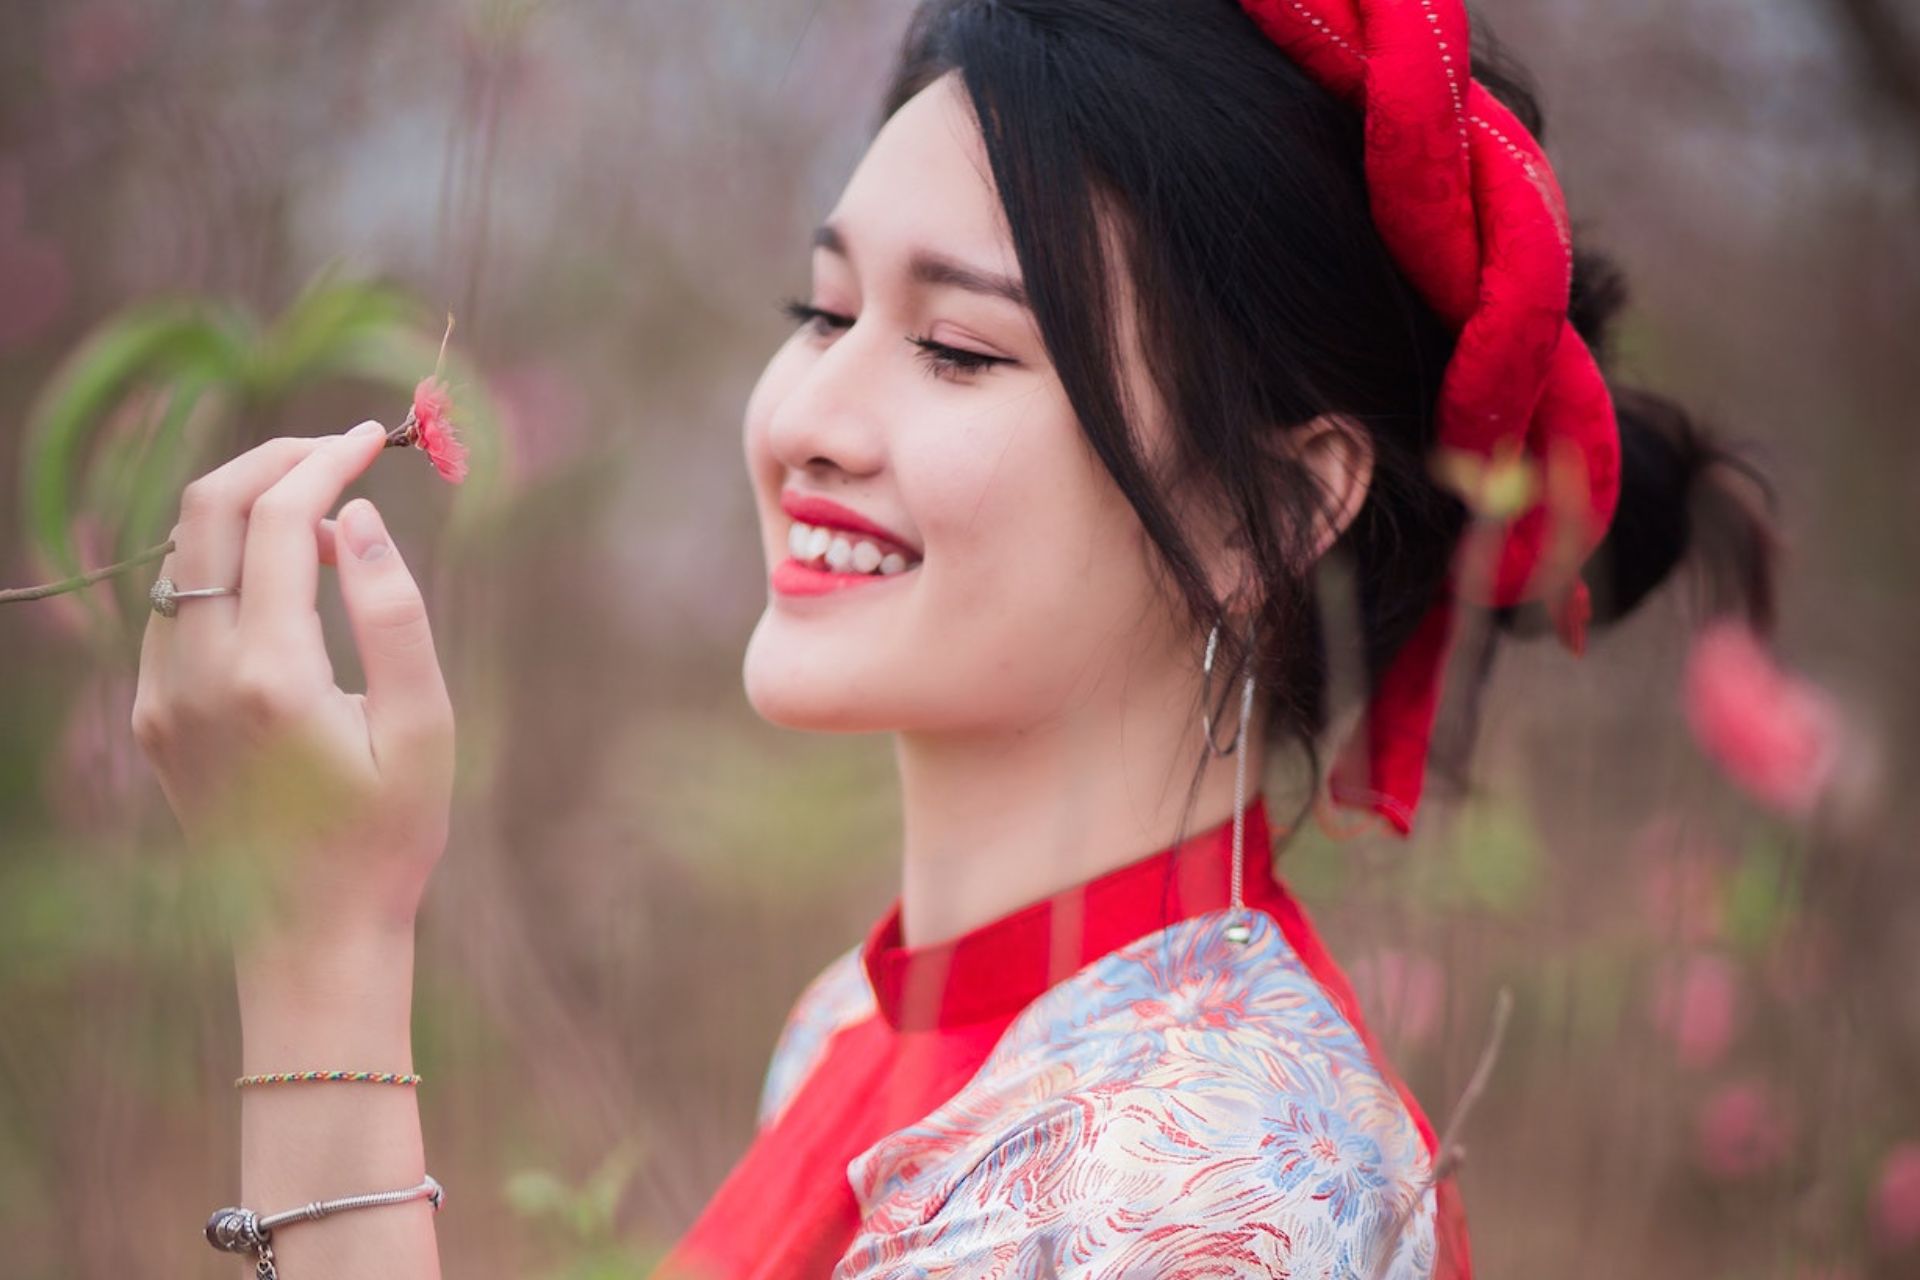 Smiling korean girl wearing red ribbon at hair